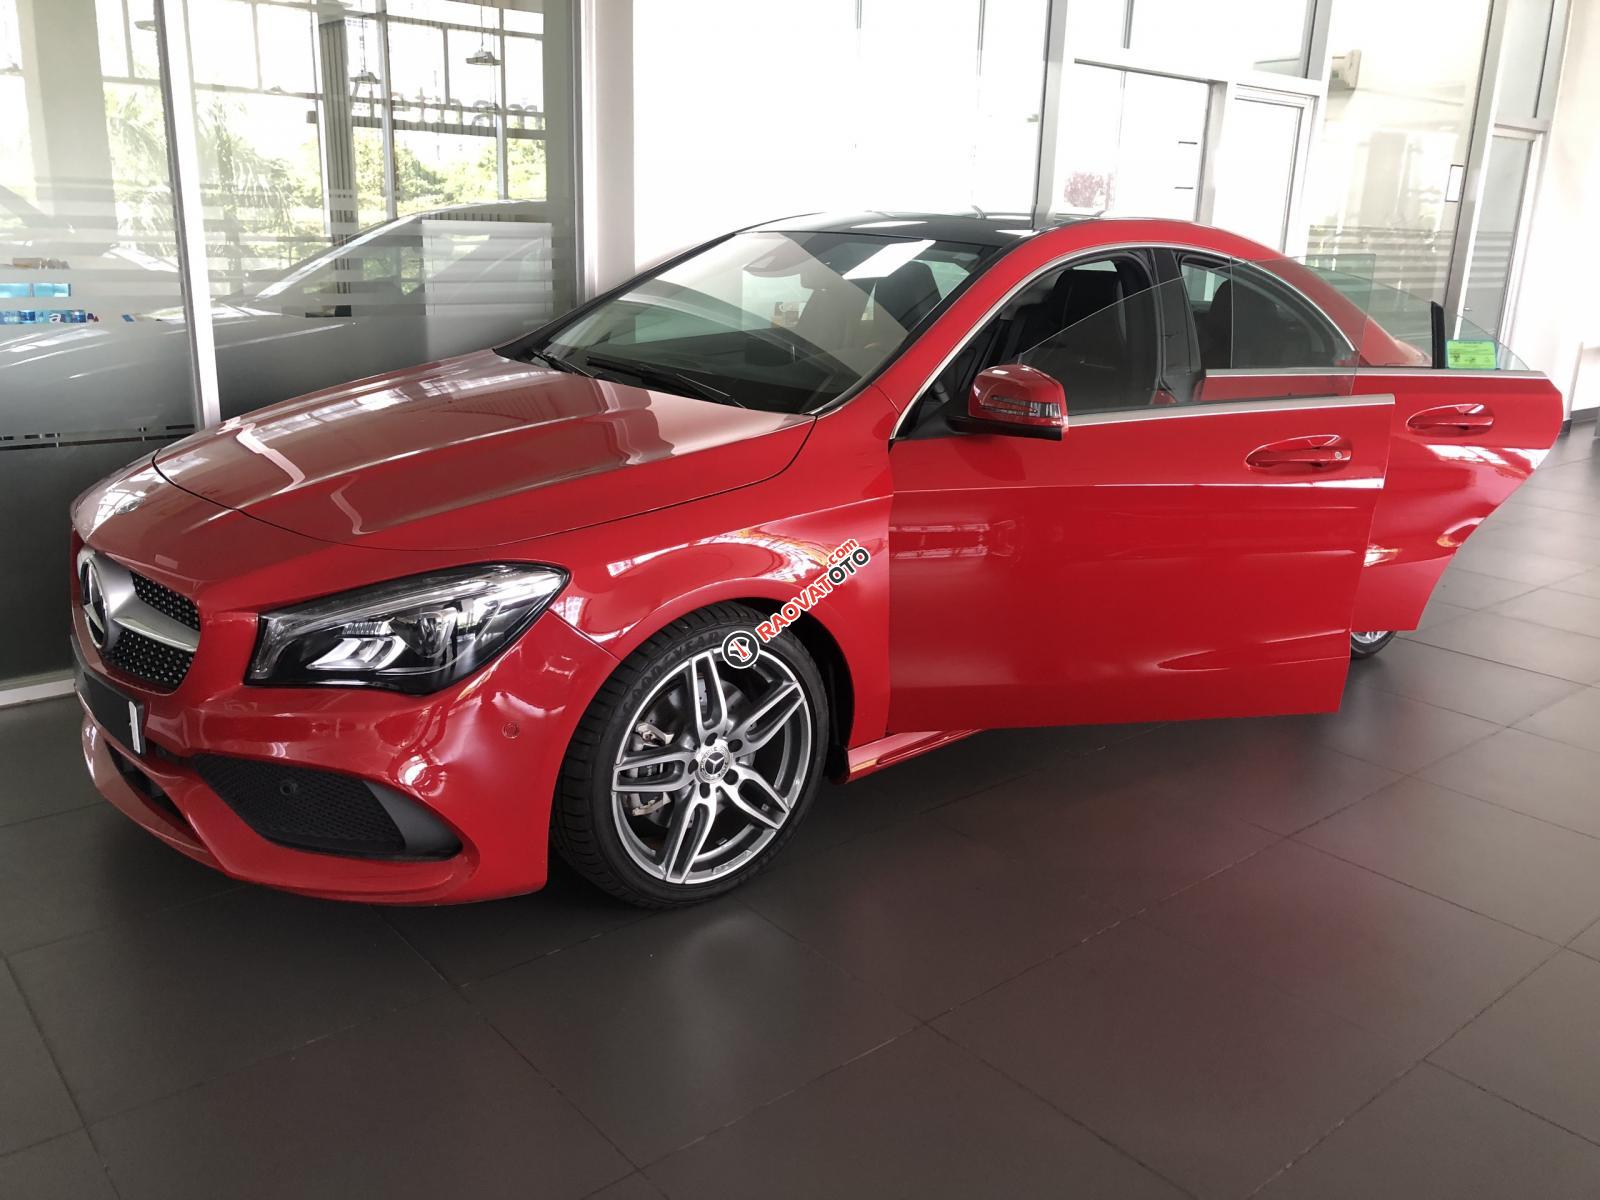 Bán xe Mercedes CLA 250 mới, màu đỏ, xe nhập khẩu, vay trả góp 80% giá trị xe, lãi 0.77%/tháng cố định 36 tháng-0